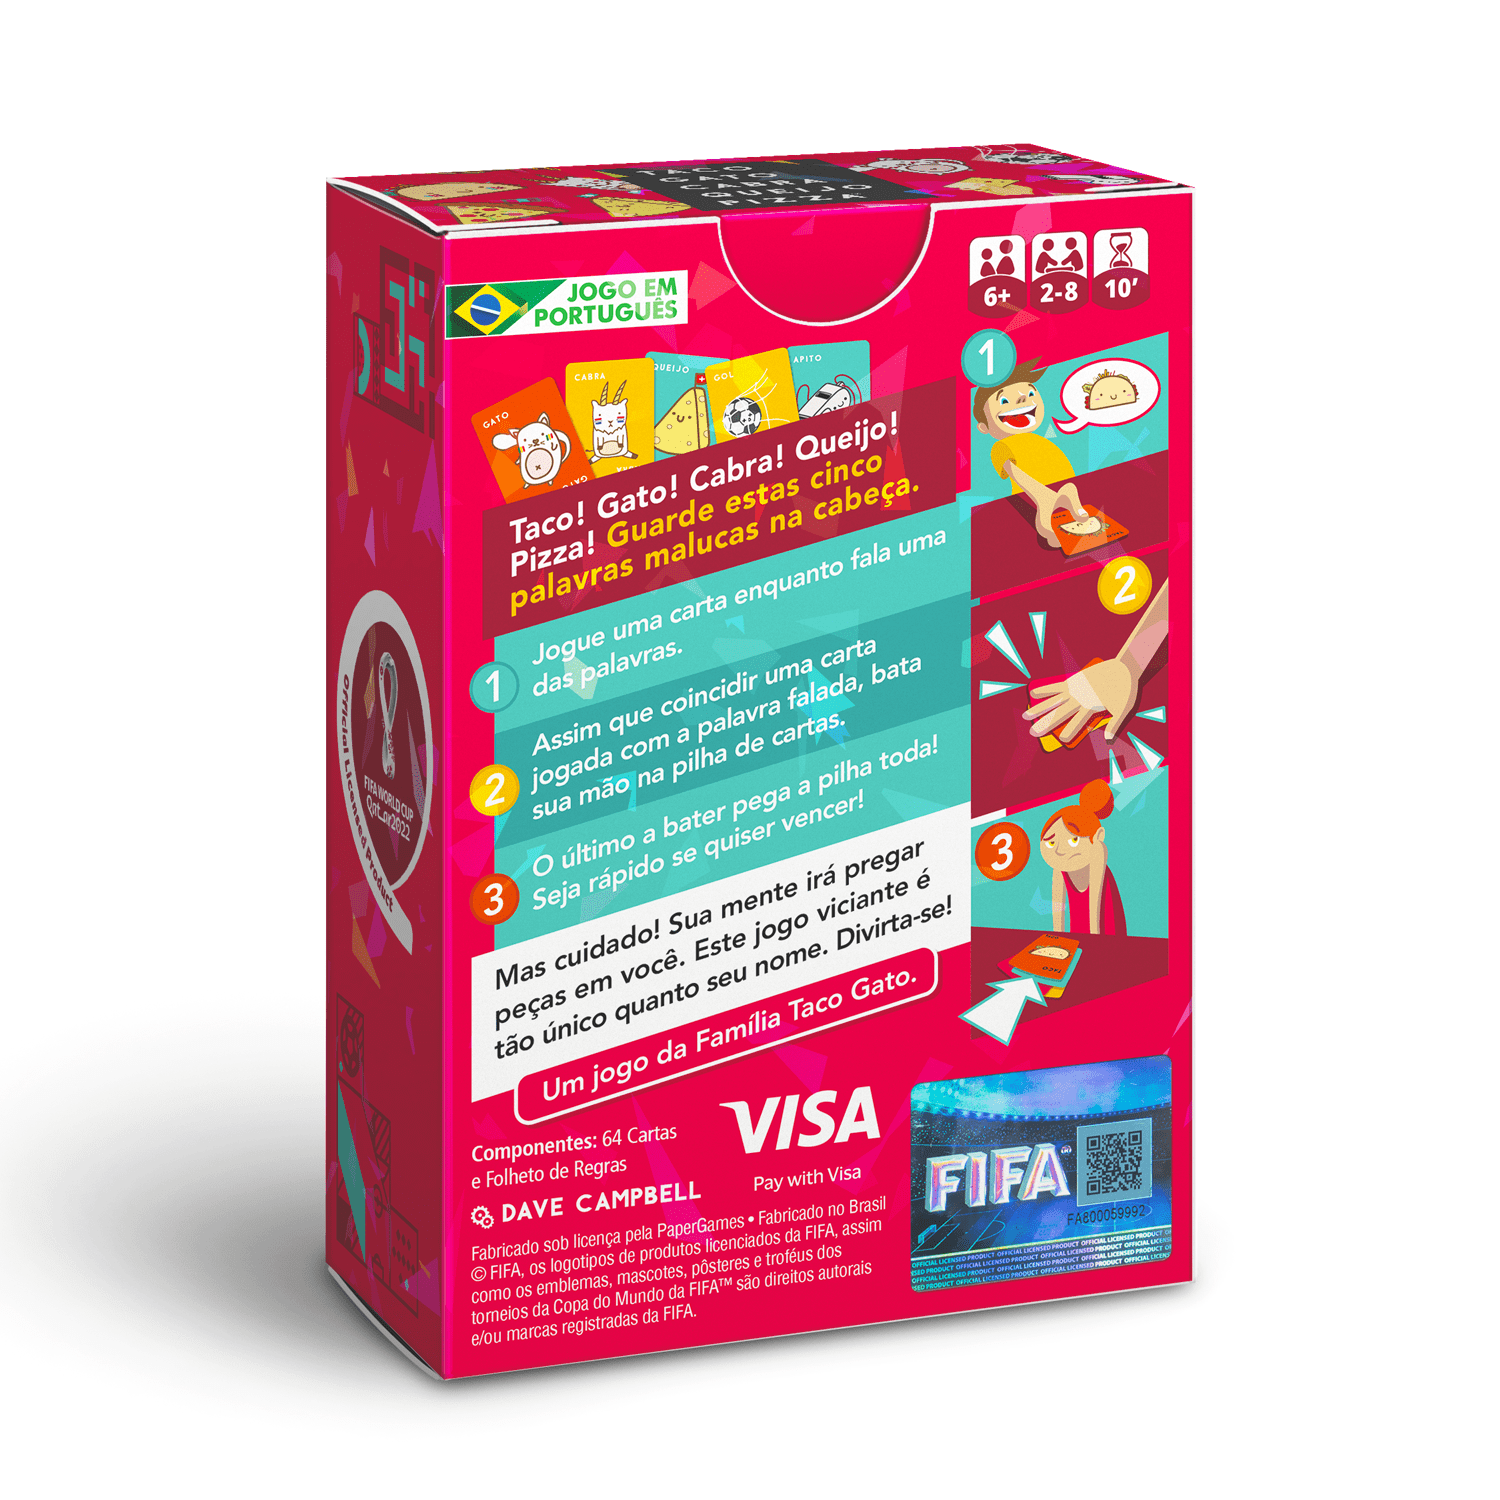 Taco Gato Cabra Queijo Pizza: Fifa World Cup Qatar 2022™ Edition